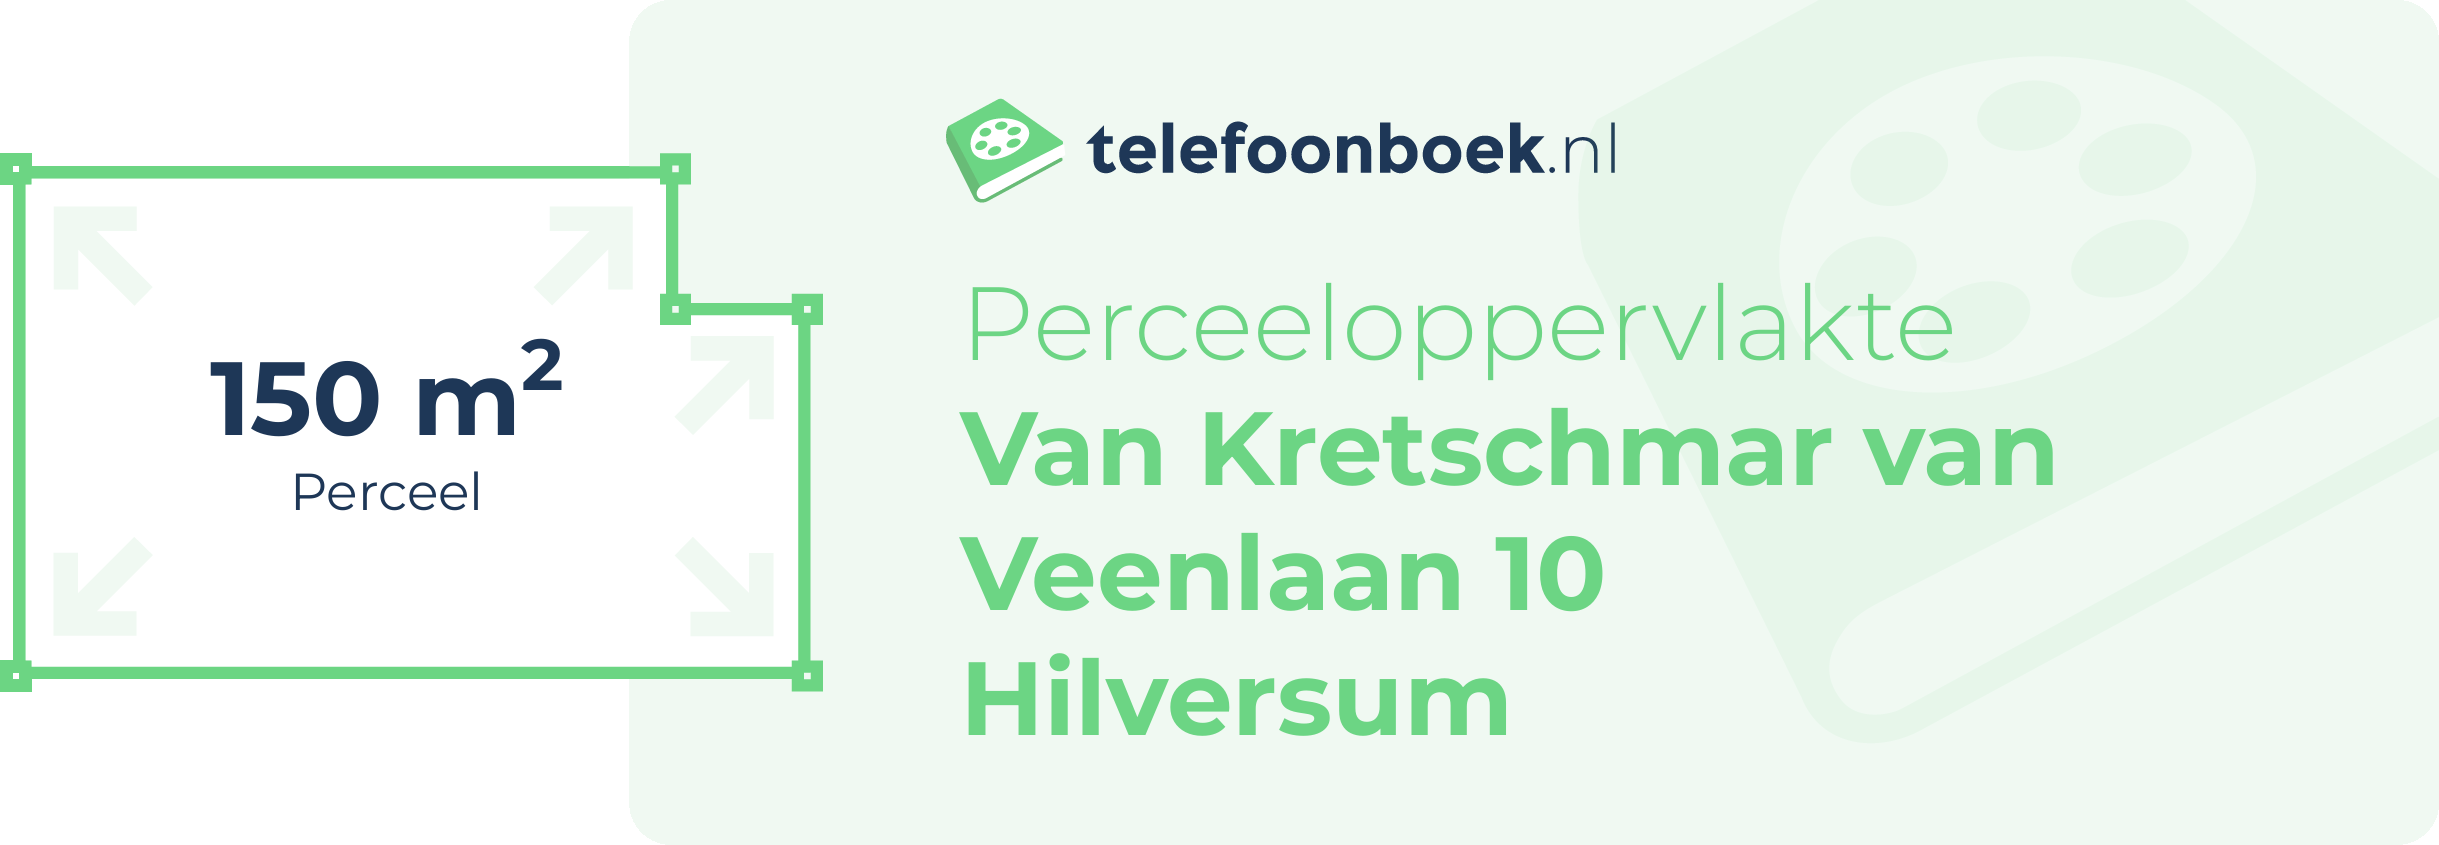 Perceeloppervlakte Van Kretschmar Van Veenlaan 10 Hilversum